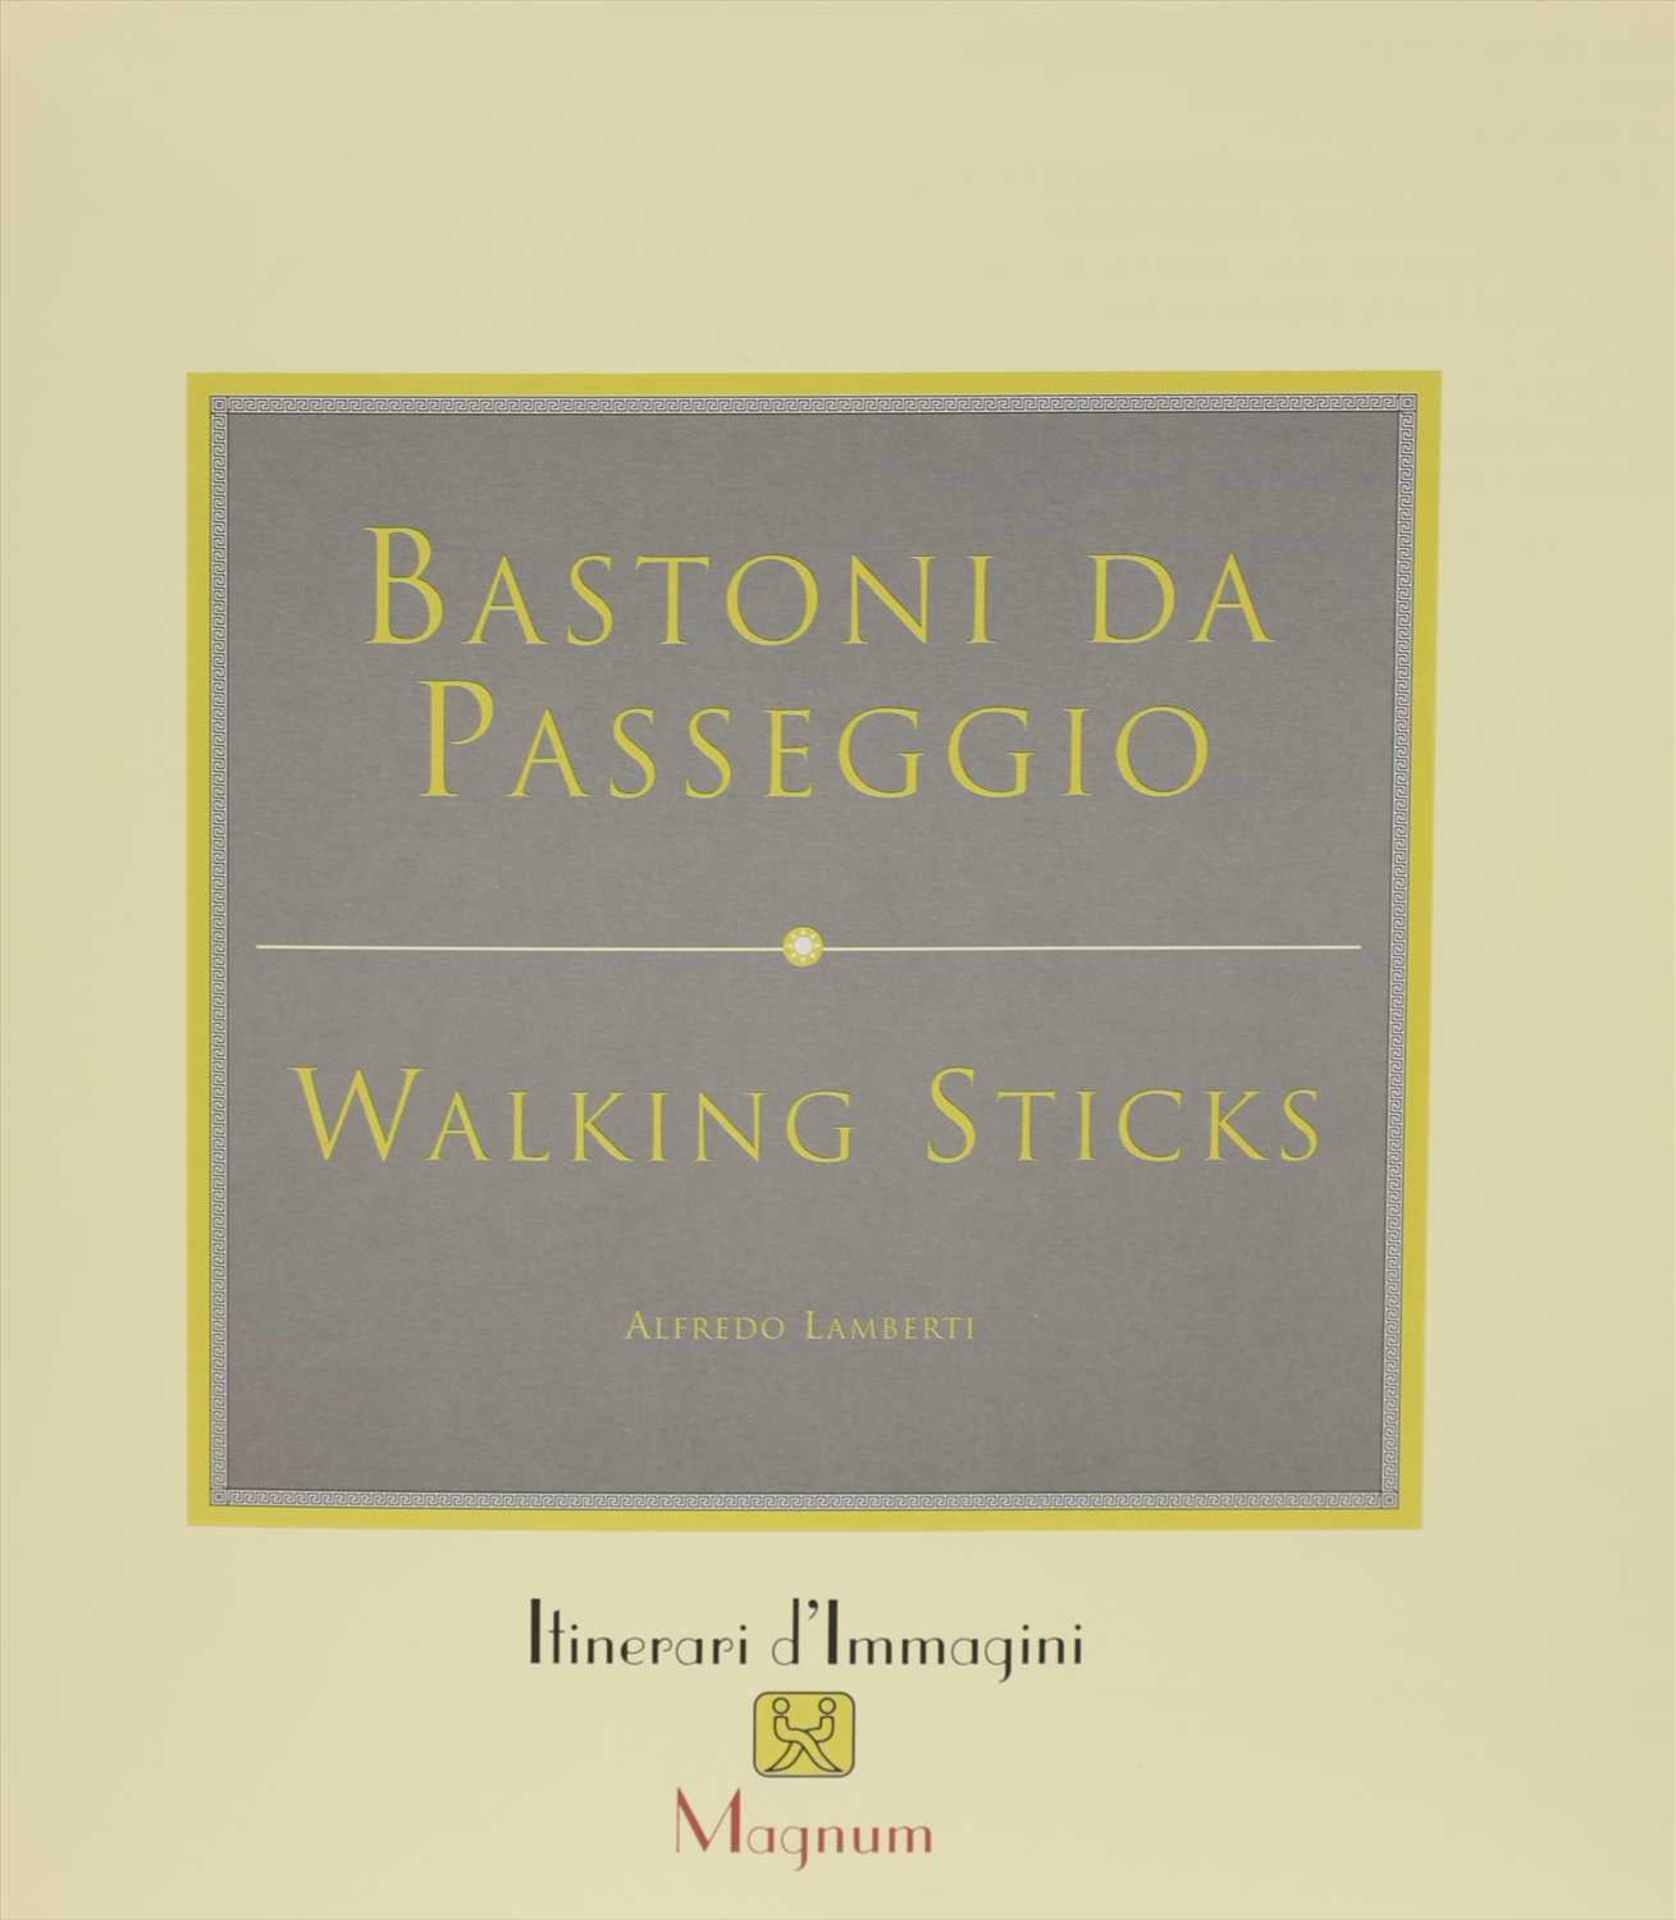 Four books on walking sticks